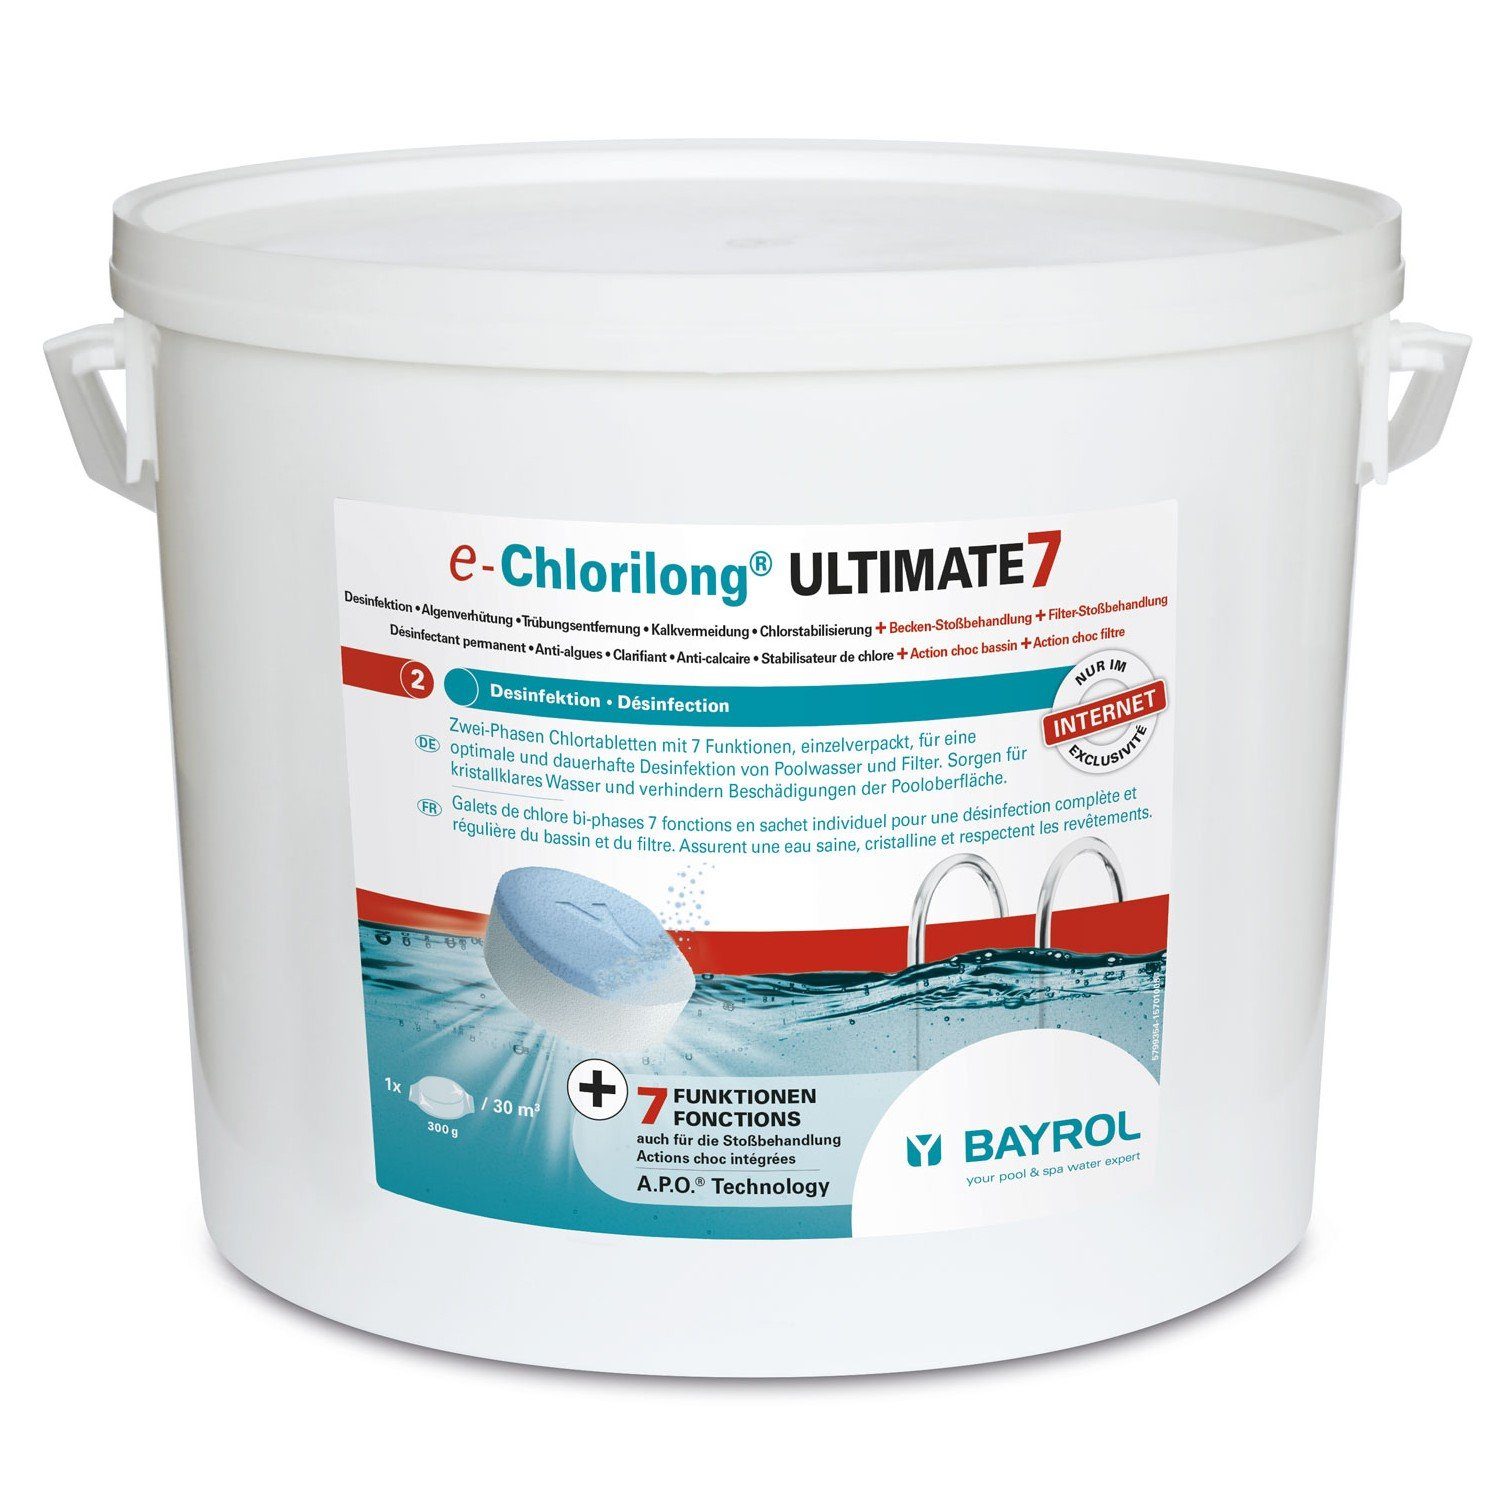 Bayrol Poolpflege Bayrol e-Chlorilong ULTIMATE 7 10,2kg 300gTabletten 7-fach-Funktion